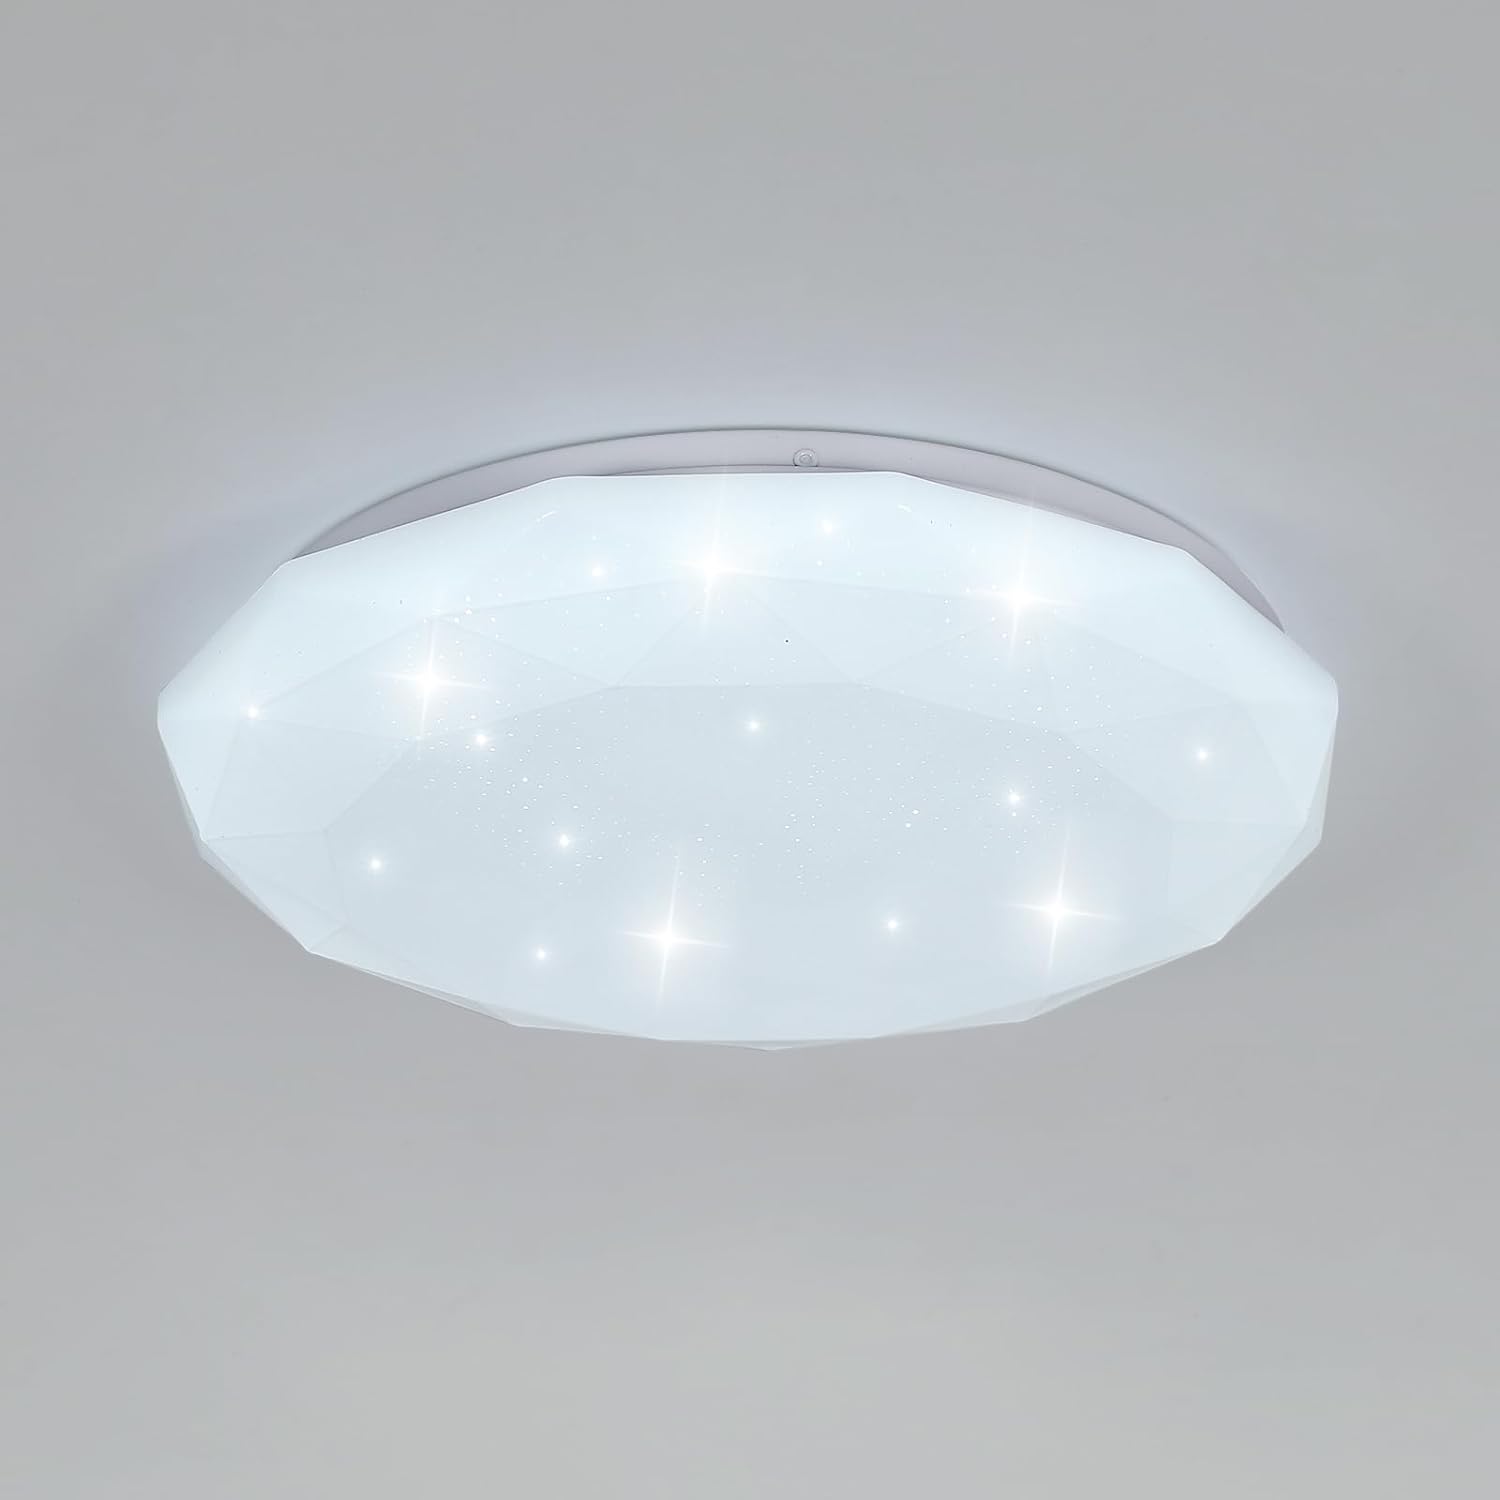 Luminaire Plafonnier Led Étoilé, 24W Lampe de Plafond pour Chambre